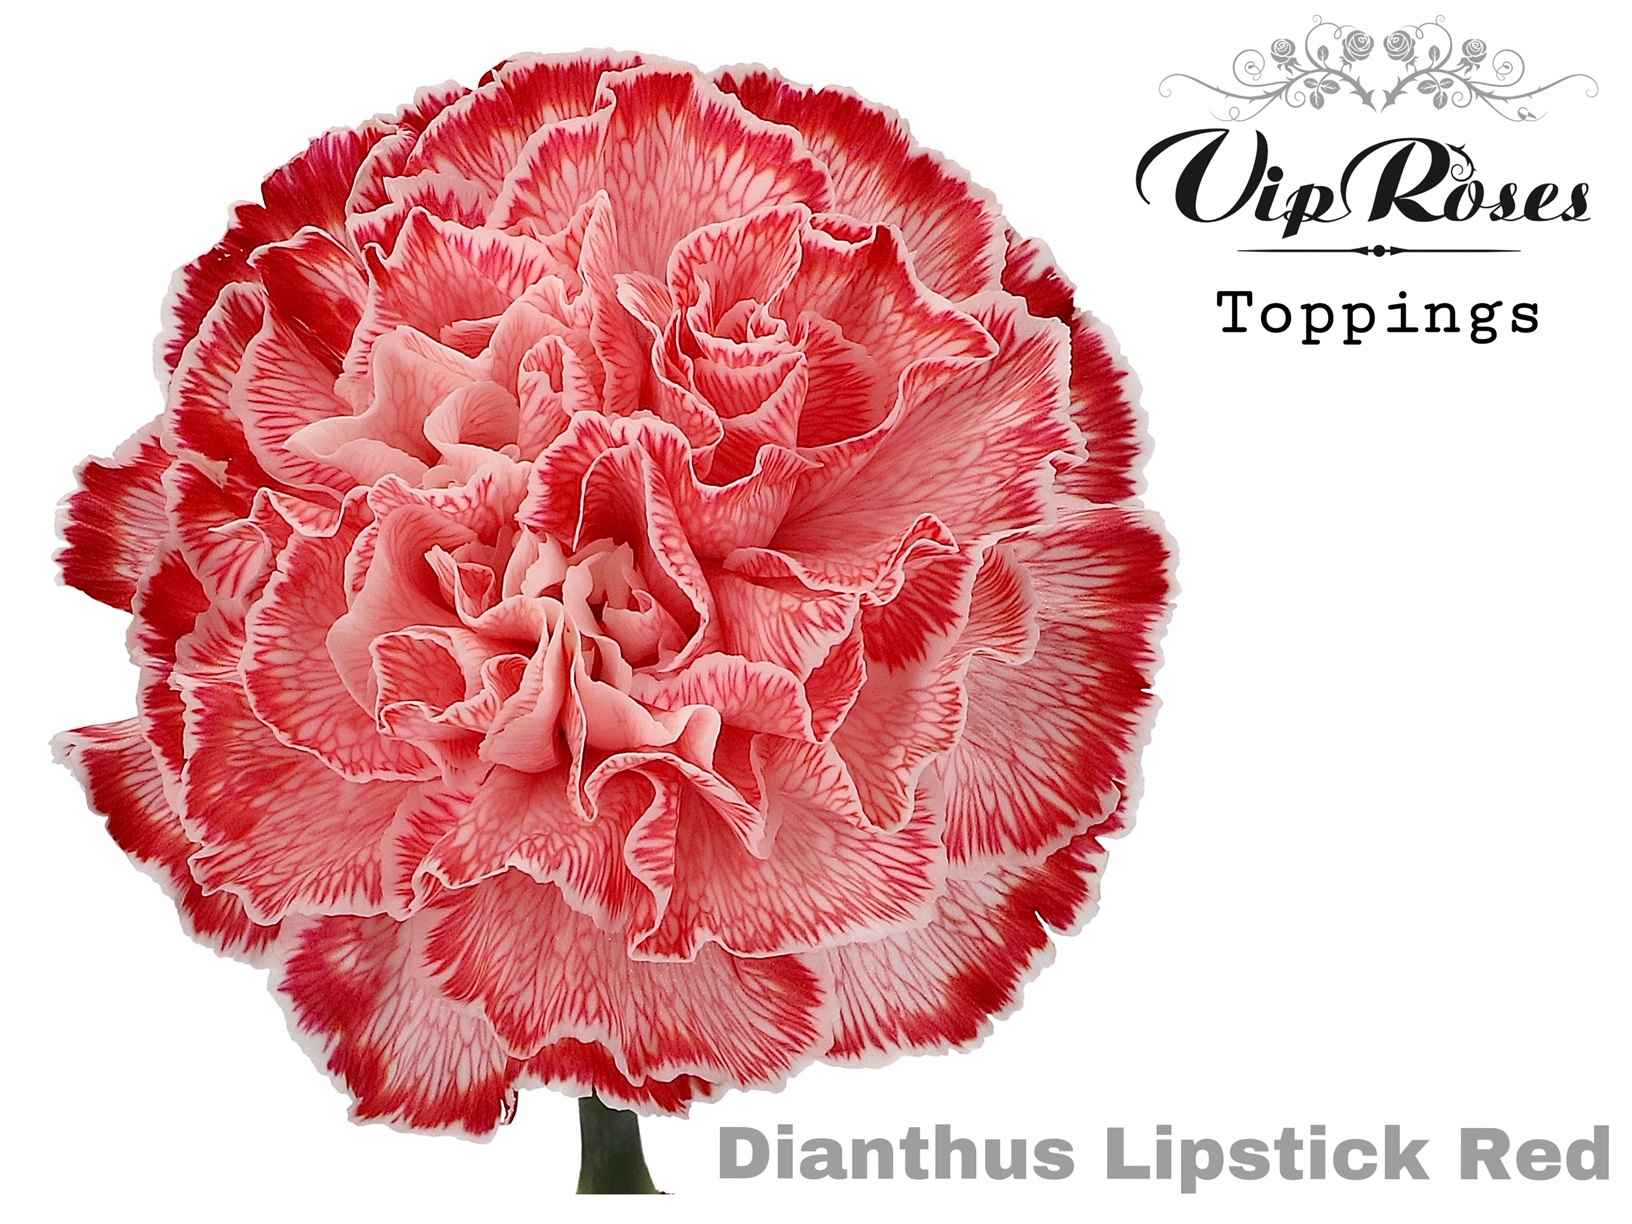 Срезанные цветы оптом Dianthus st paint lipstick red от 40шт из Голландии с доставкой по России